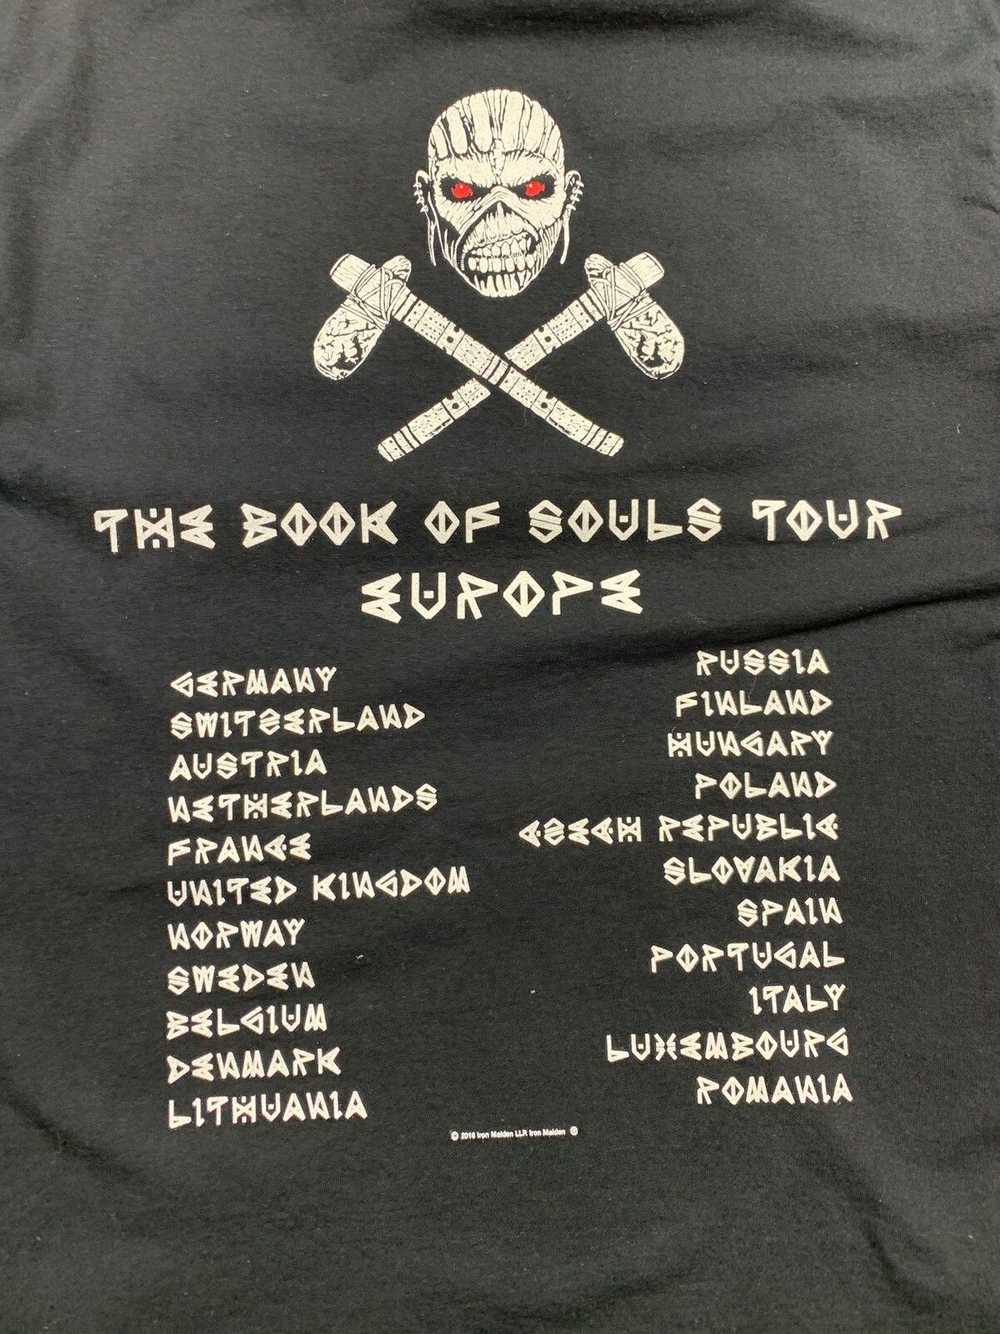 Band Tees Iron Maiden 2016 Europa Tour - image 5